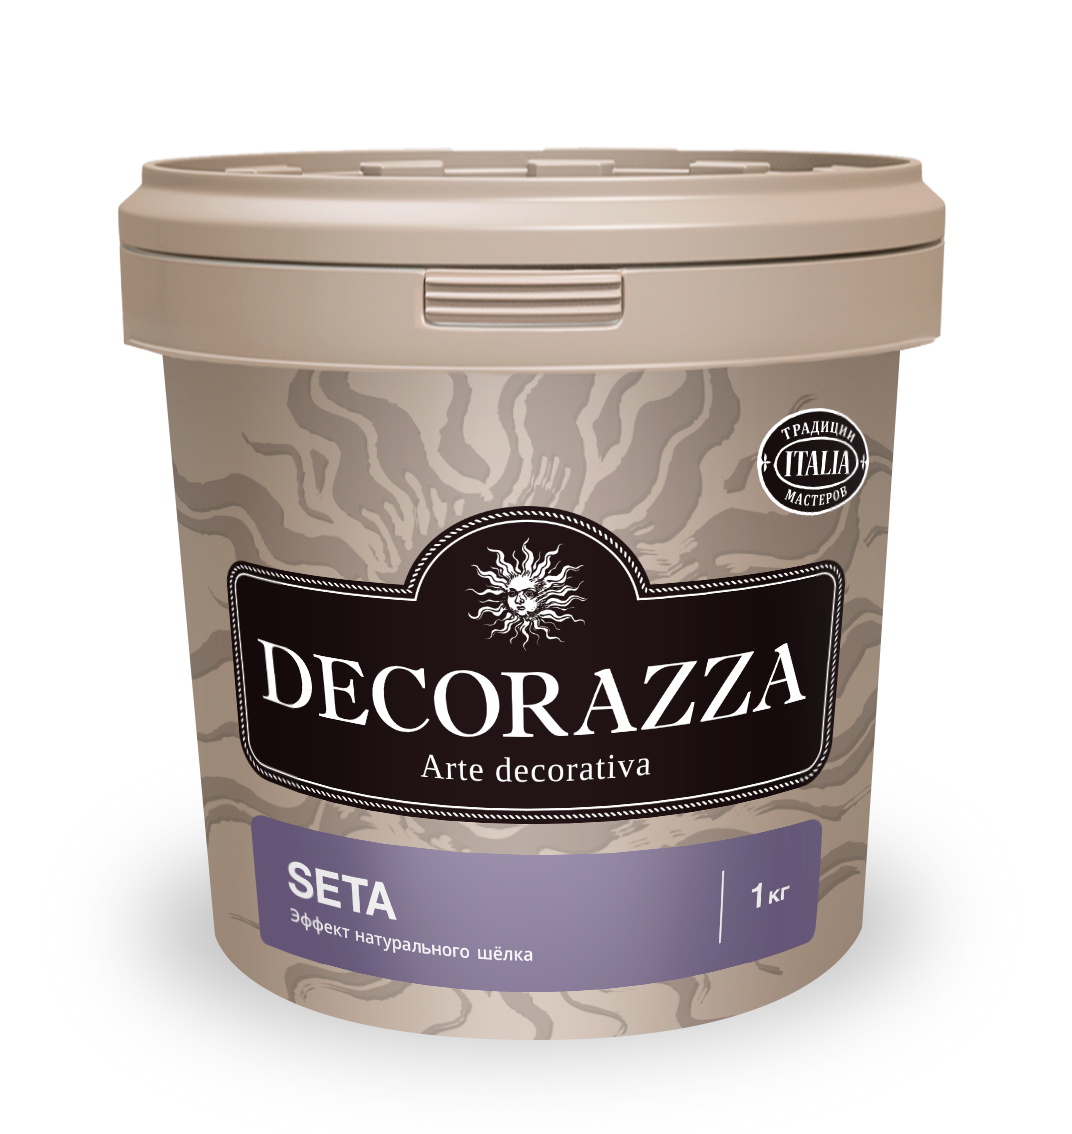 Декоративная штукатурка эффект натурального шелка Decorazza Seta, ST 800, золото, 1 кг краска декоративная decorazza alcantara 1 л 0 7 кг